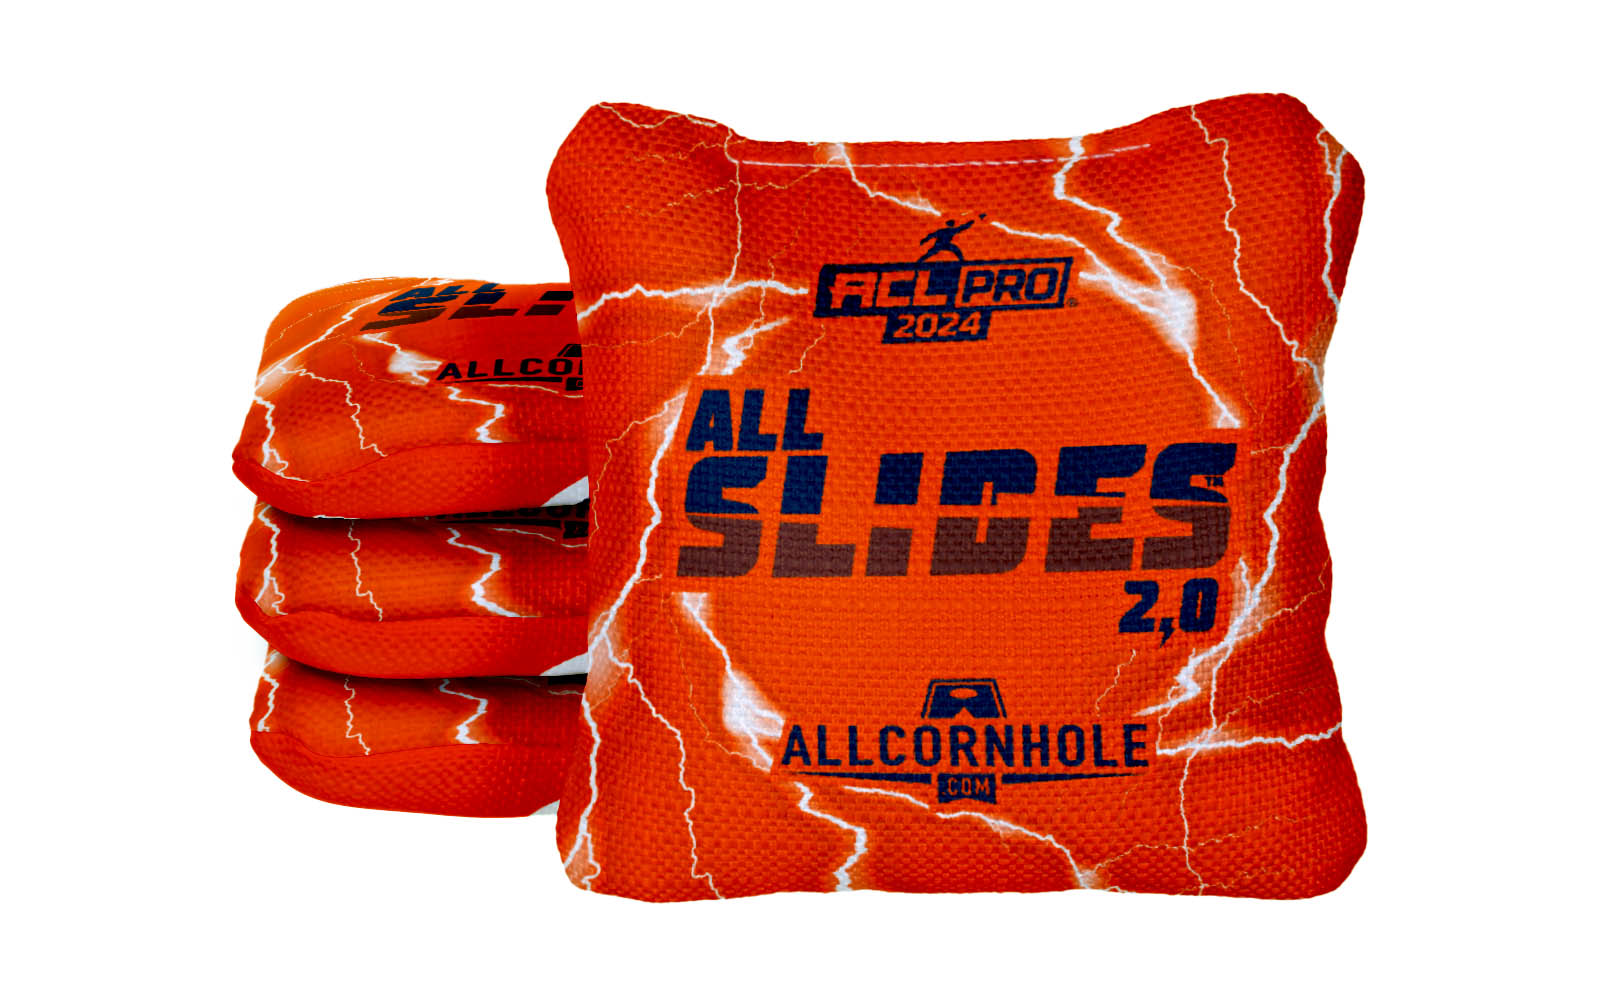 Officially Licensed Collegiate Cornhole Bags - All-Slide 2.0 - Set of 4 - Auburn University